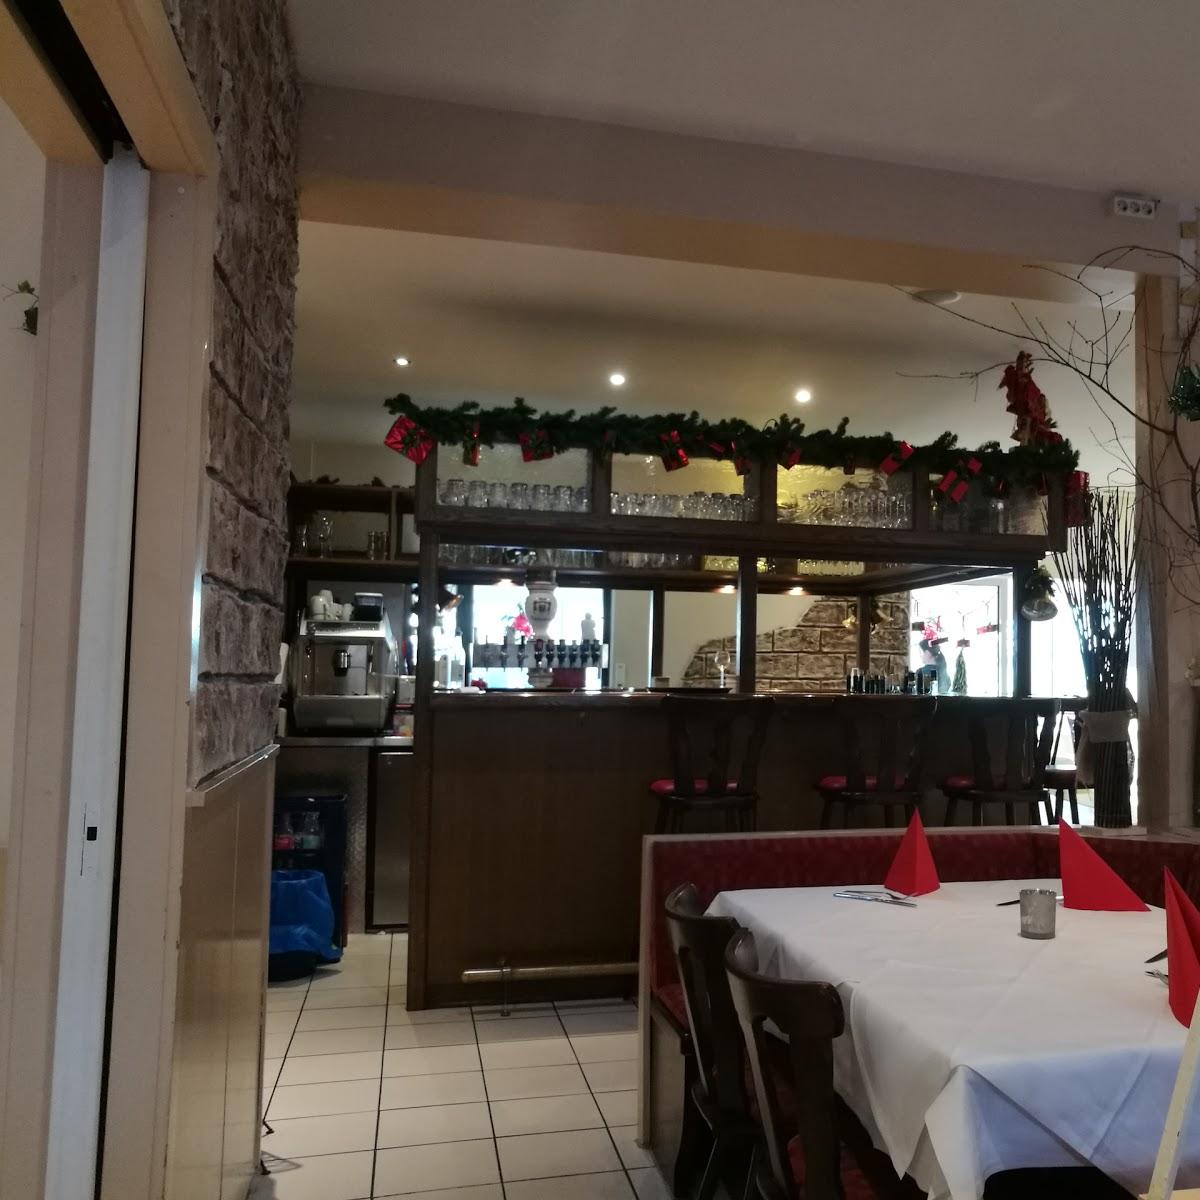 Restaurant "Taverne Mykonos" in Schriesheim